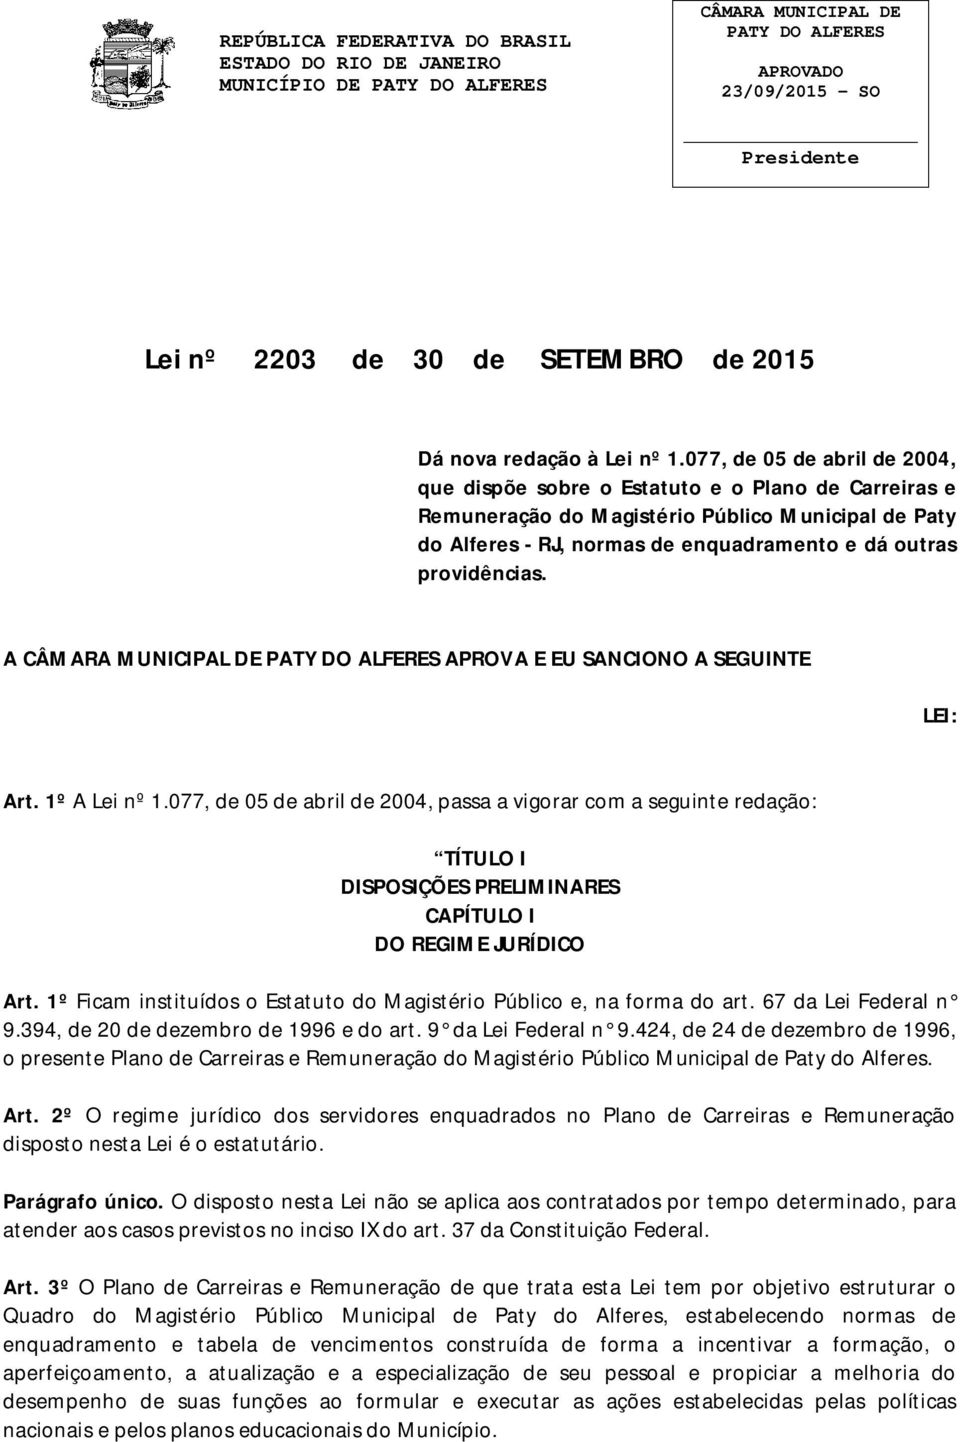 077, de 05 de abril de 2004, que dispõe sobre o Estatuto e o Plano de Carreiras e Remuneração do Magistério Público Municipal de Paty do Alferes - RJ, normas de enquadramento e dá outras providências.